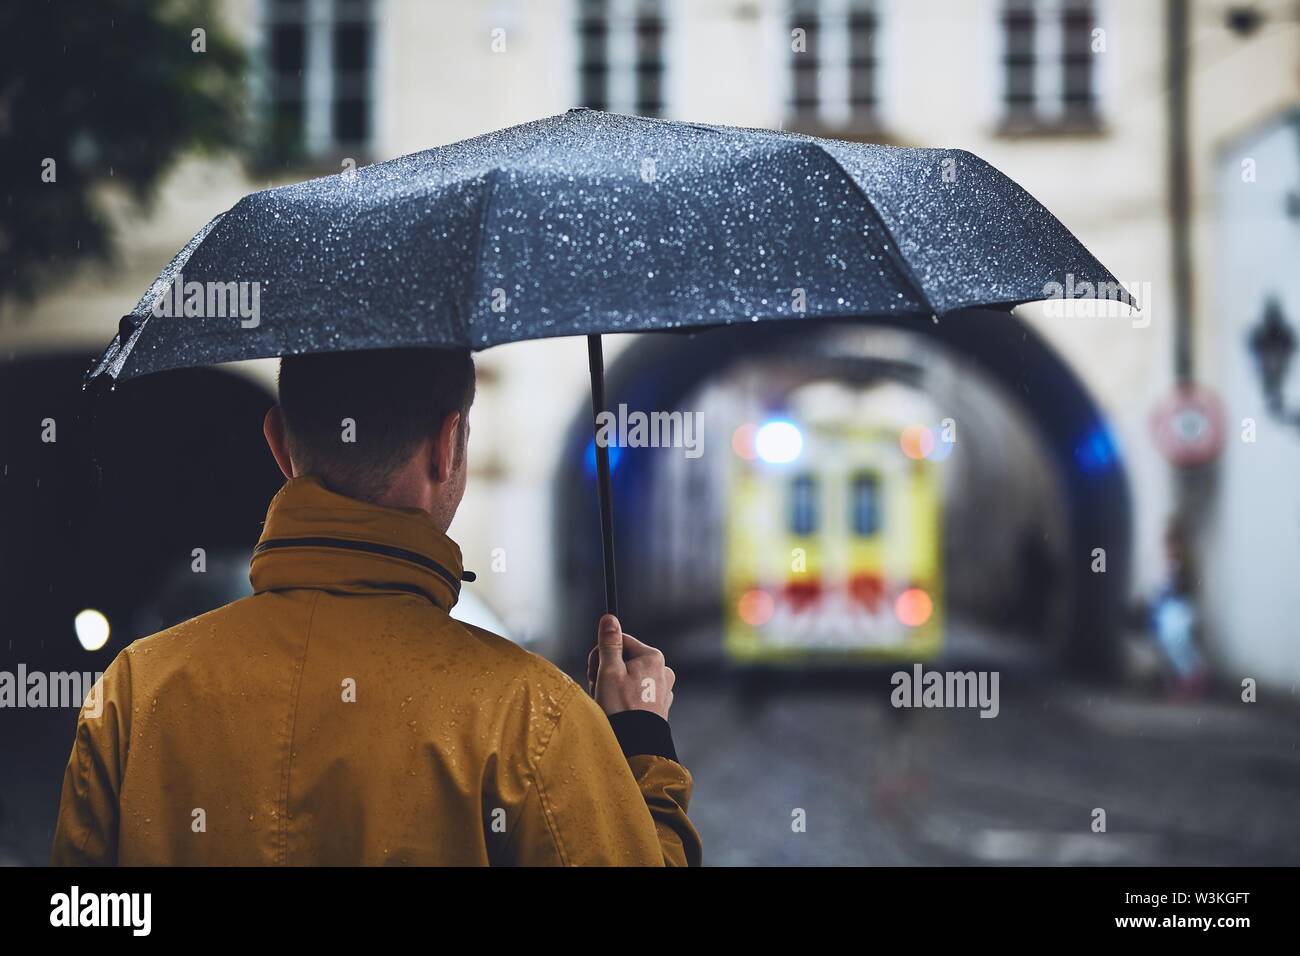 13.000+ Fotos, Bilder und lizenzfreie Bilder zu Regenschirm Auto